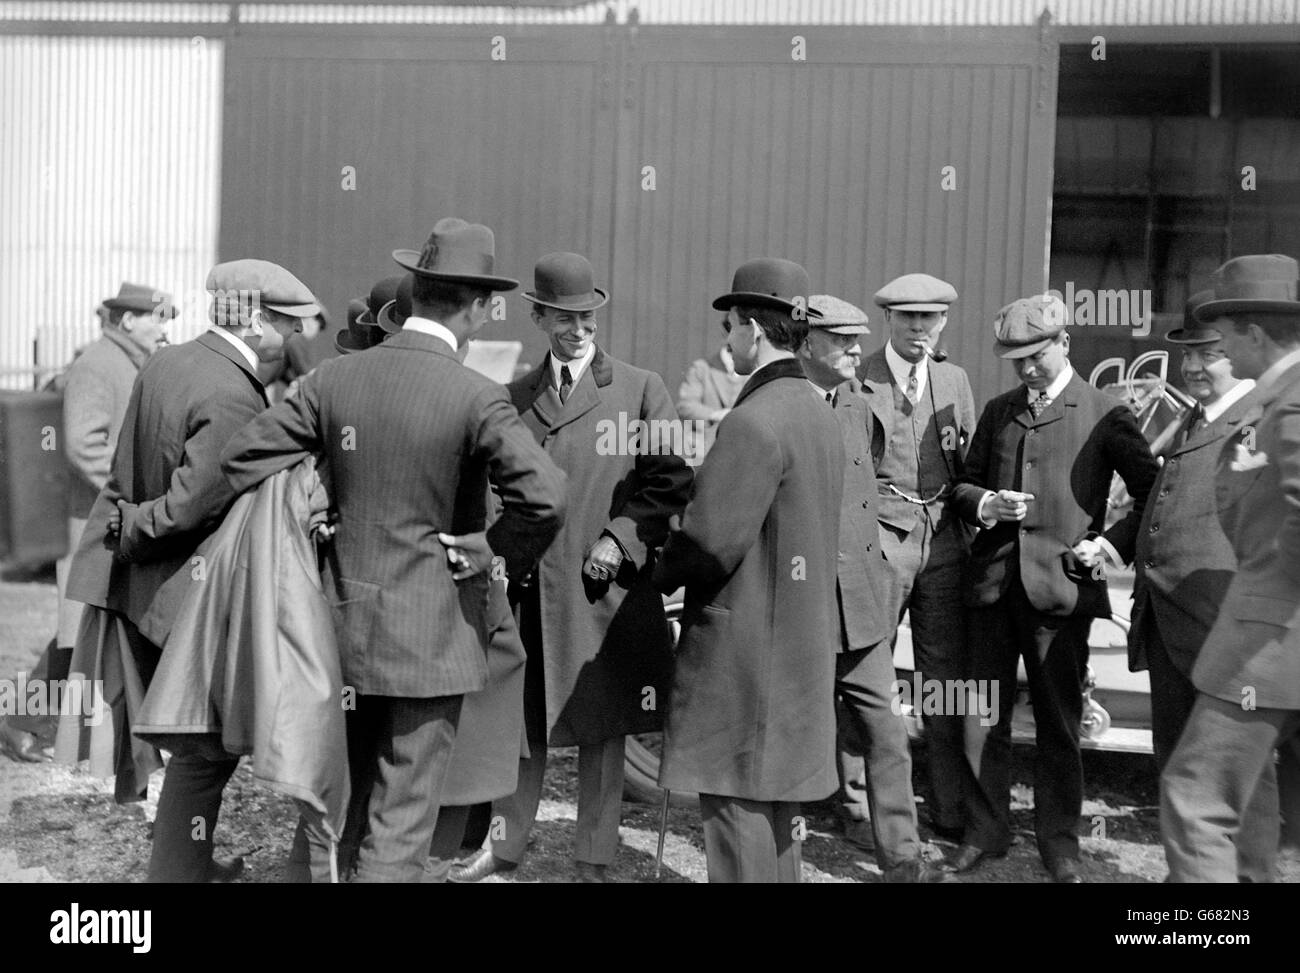 Pionieri americani aviatori Wilbur (centro, cappello bowler, di fronte fotocamera) e Orville (centro, cappello bowler, ritorno alla fotocamera) Wright a Shell Beach, Leysown sull'isola di Sheppey. Foto Stock